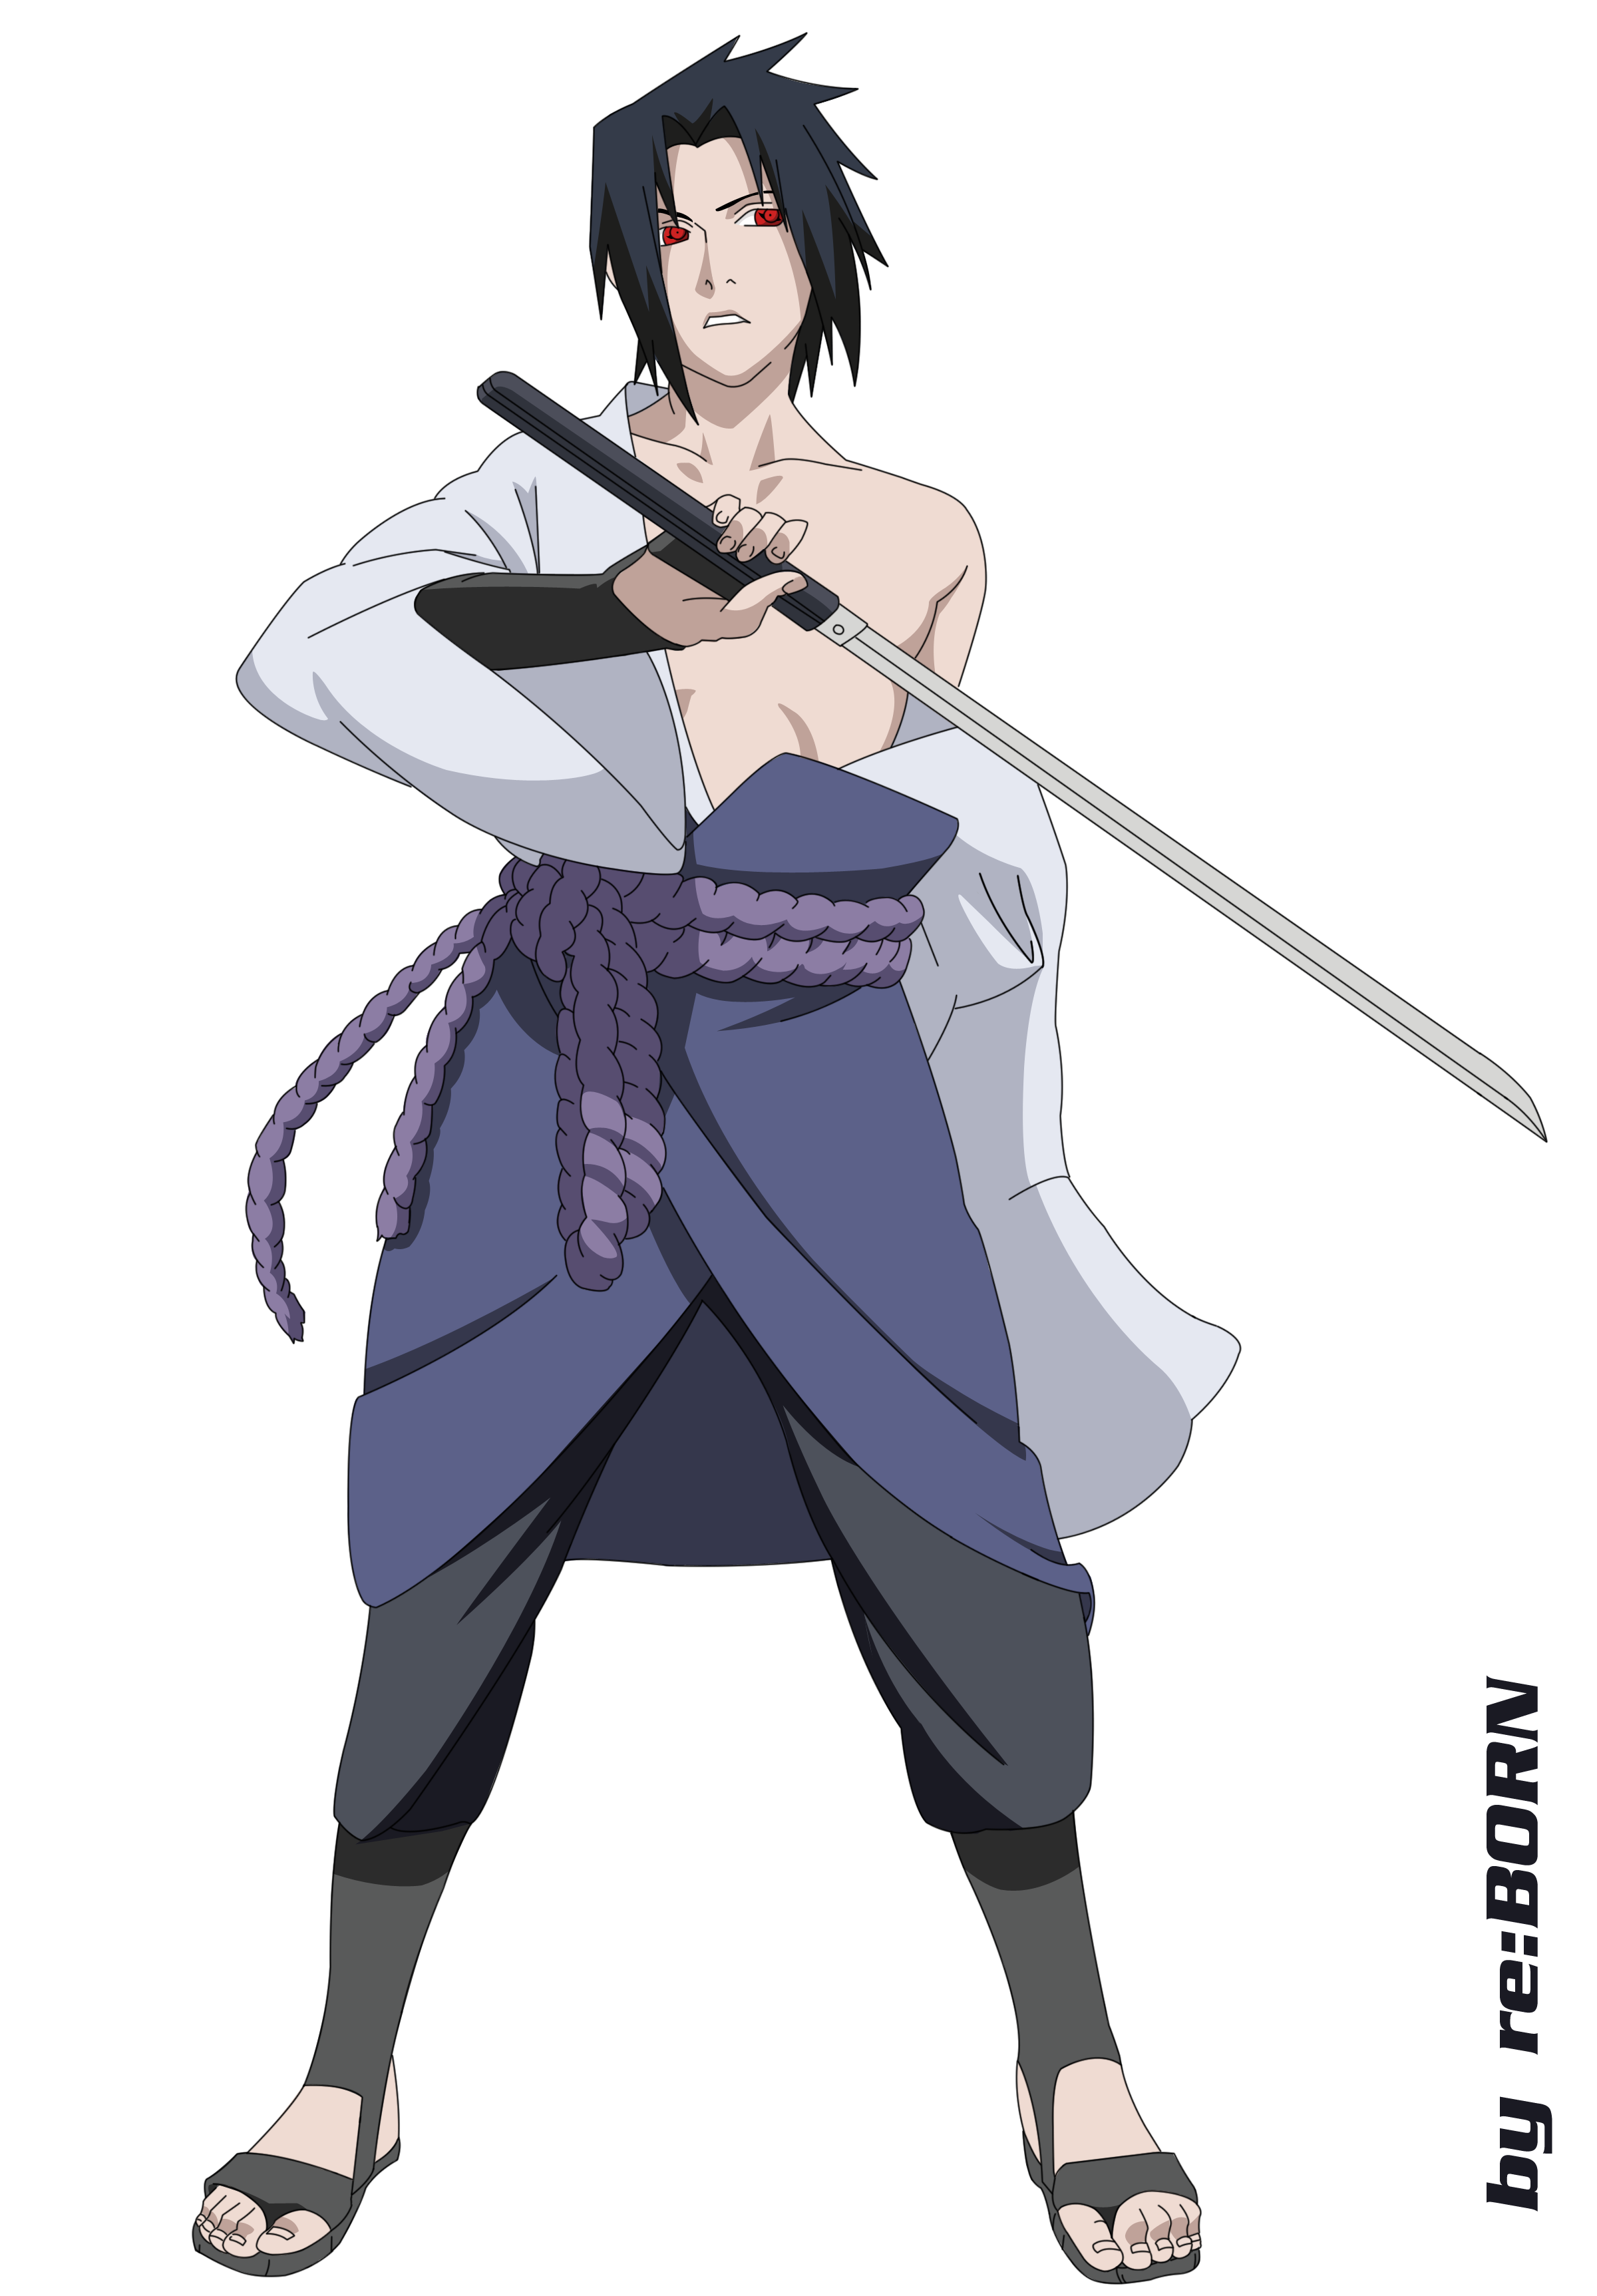 Uchiha Sasuke, Naruto: Shippuden, Sharingan, swords - desktop wallpaper